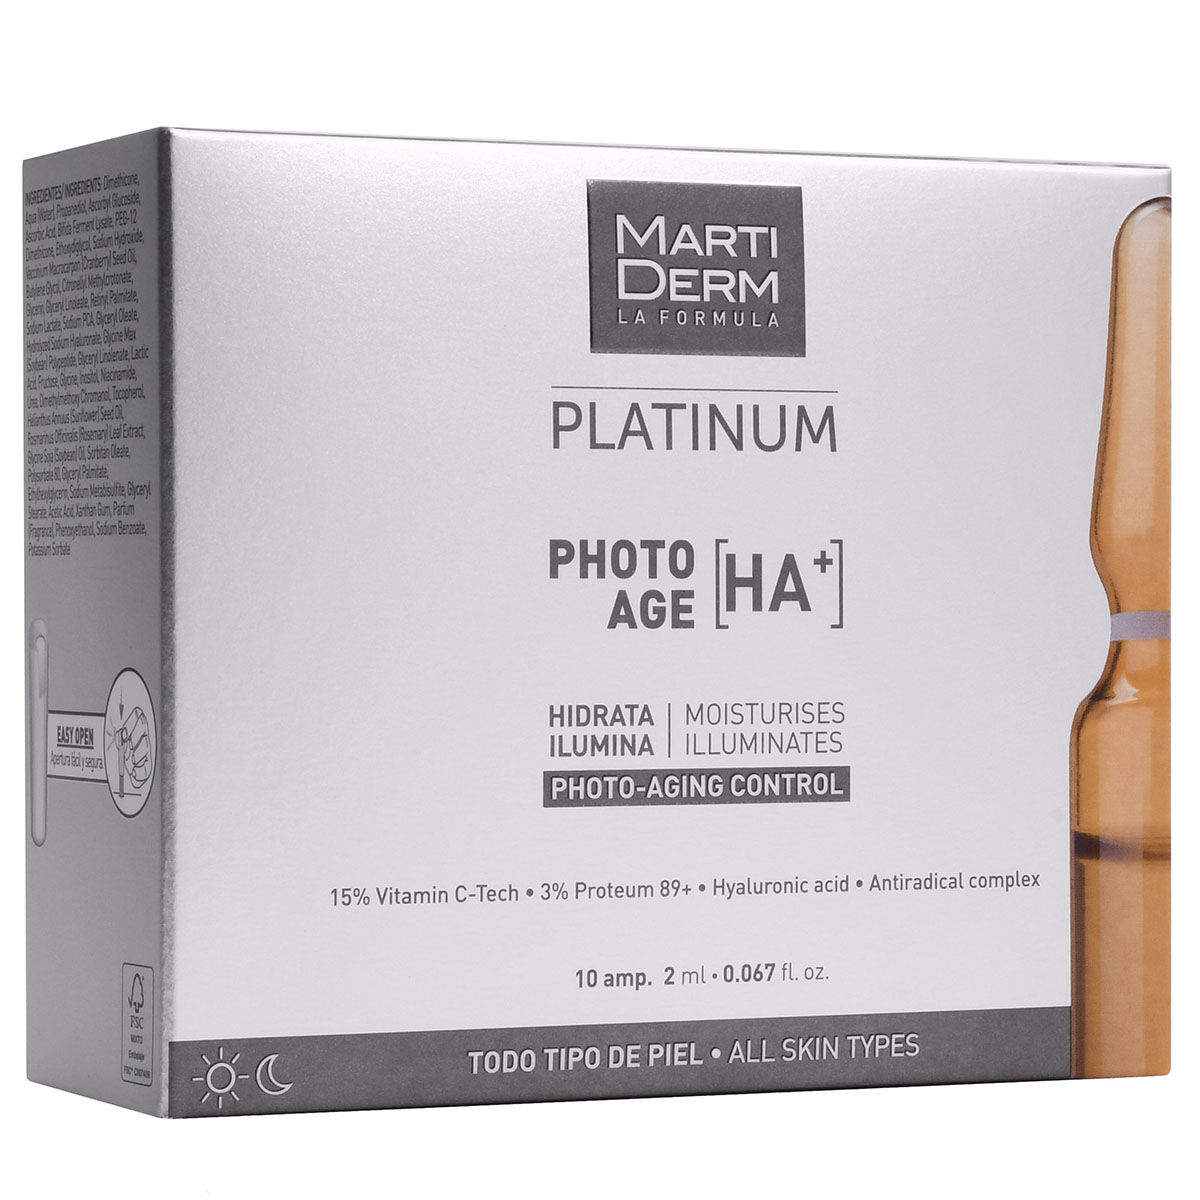 цена Увлажняющая и осветляющая сыворотка для лица в ампулах Martiderm Platinum Photo Age Ha+, 10х2 мл